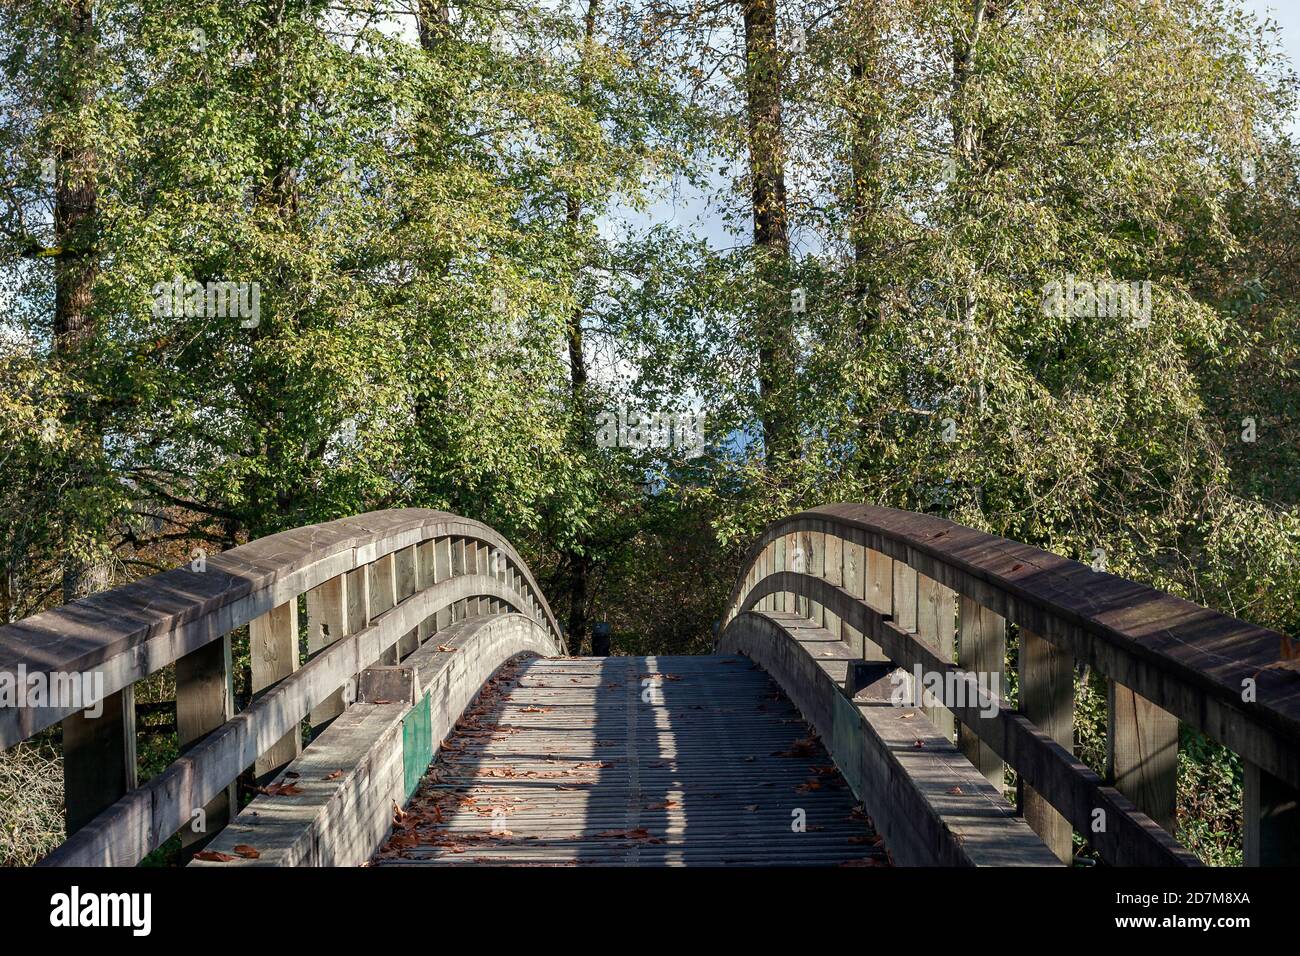 Pont d'arche en bois avec bois de coton à l'arrière-plan, jour ensoleillé, ombres formant des lignes de tête, quelques couleurs d'automne, feuilles tombées, forme symétrique. Banque D'Images